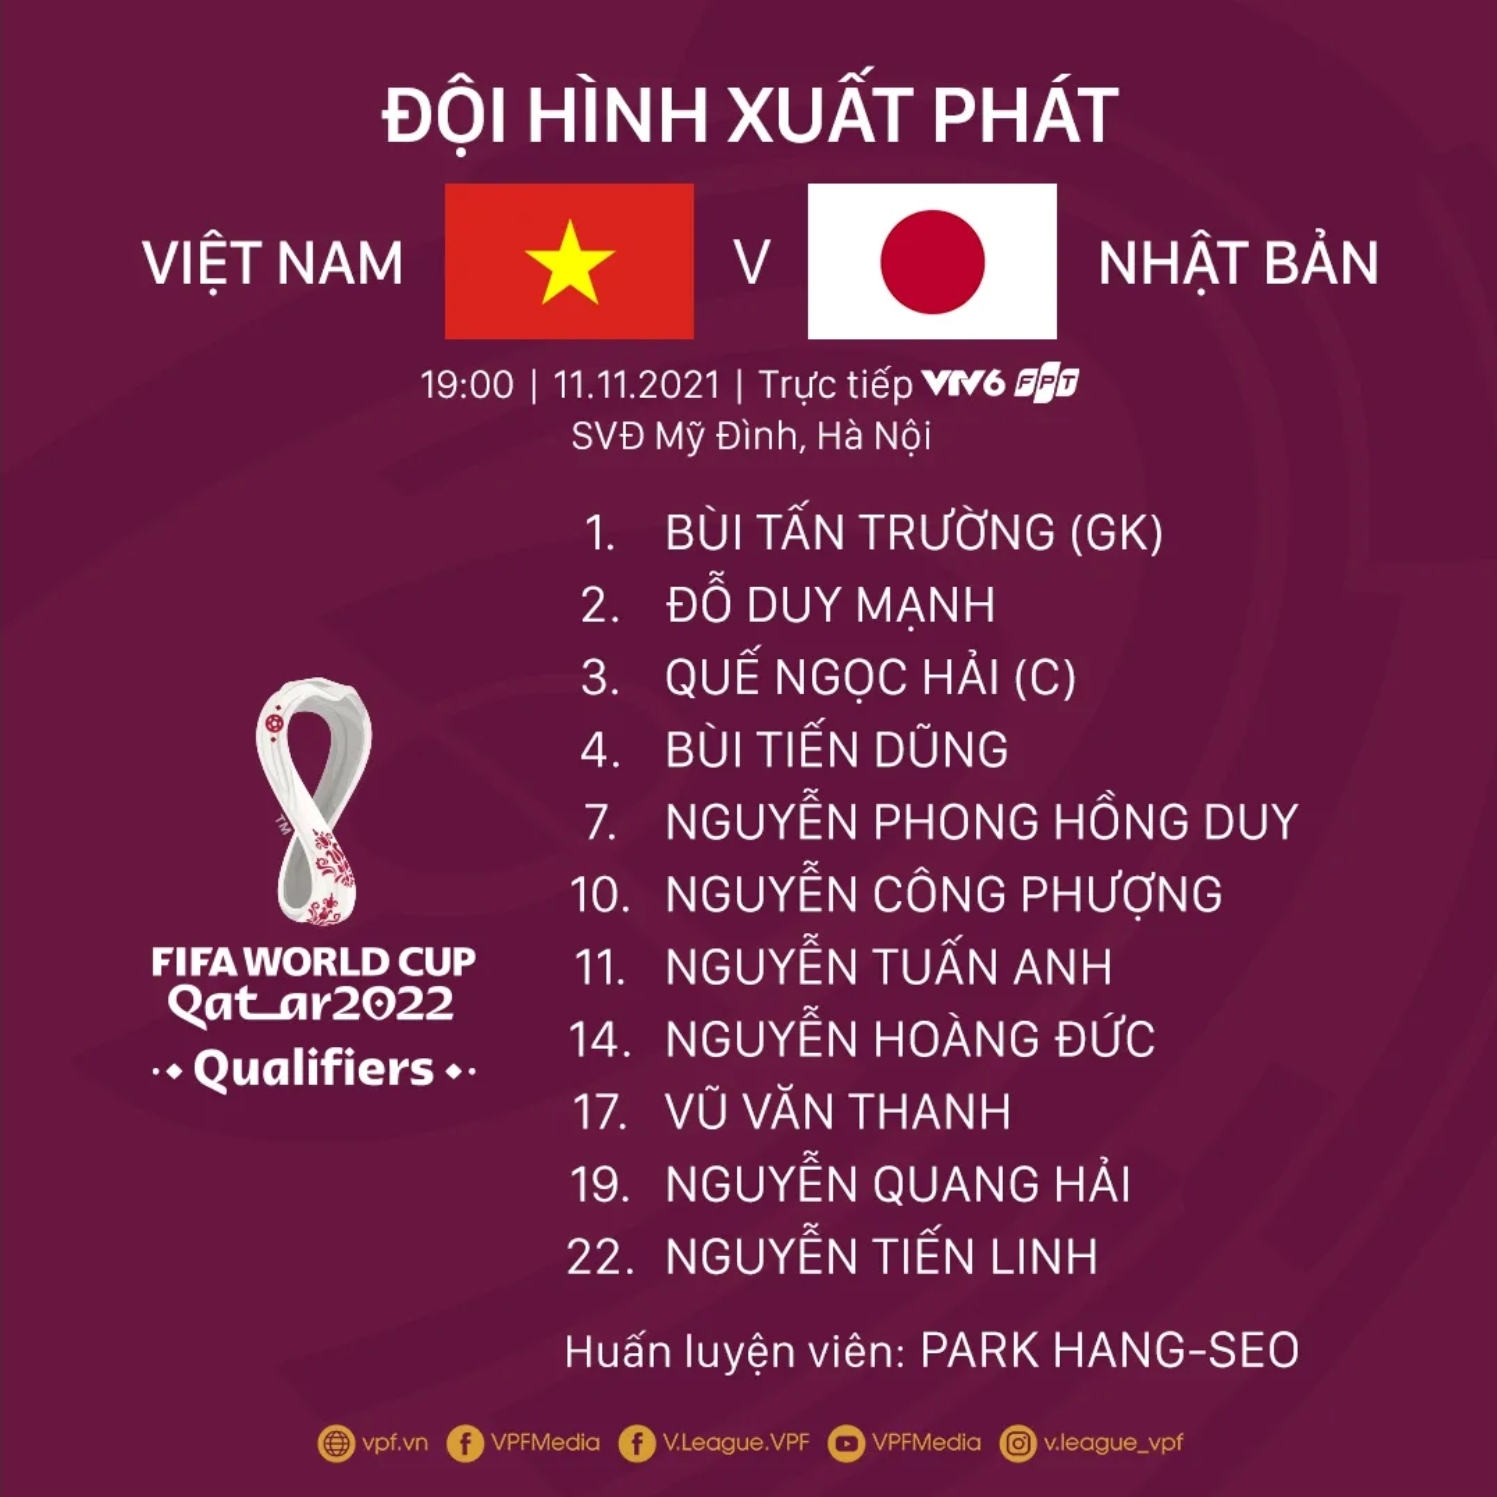 Đội hình chính thức của ĐT Việt Nam - Ảnh: VPF